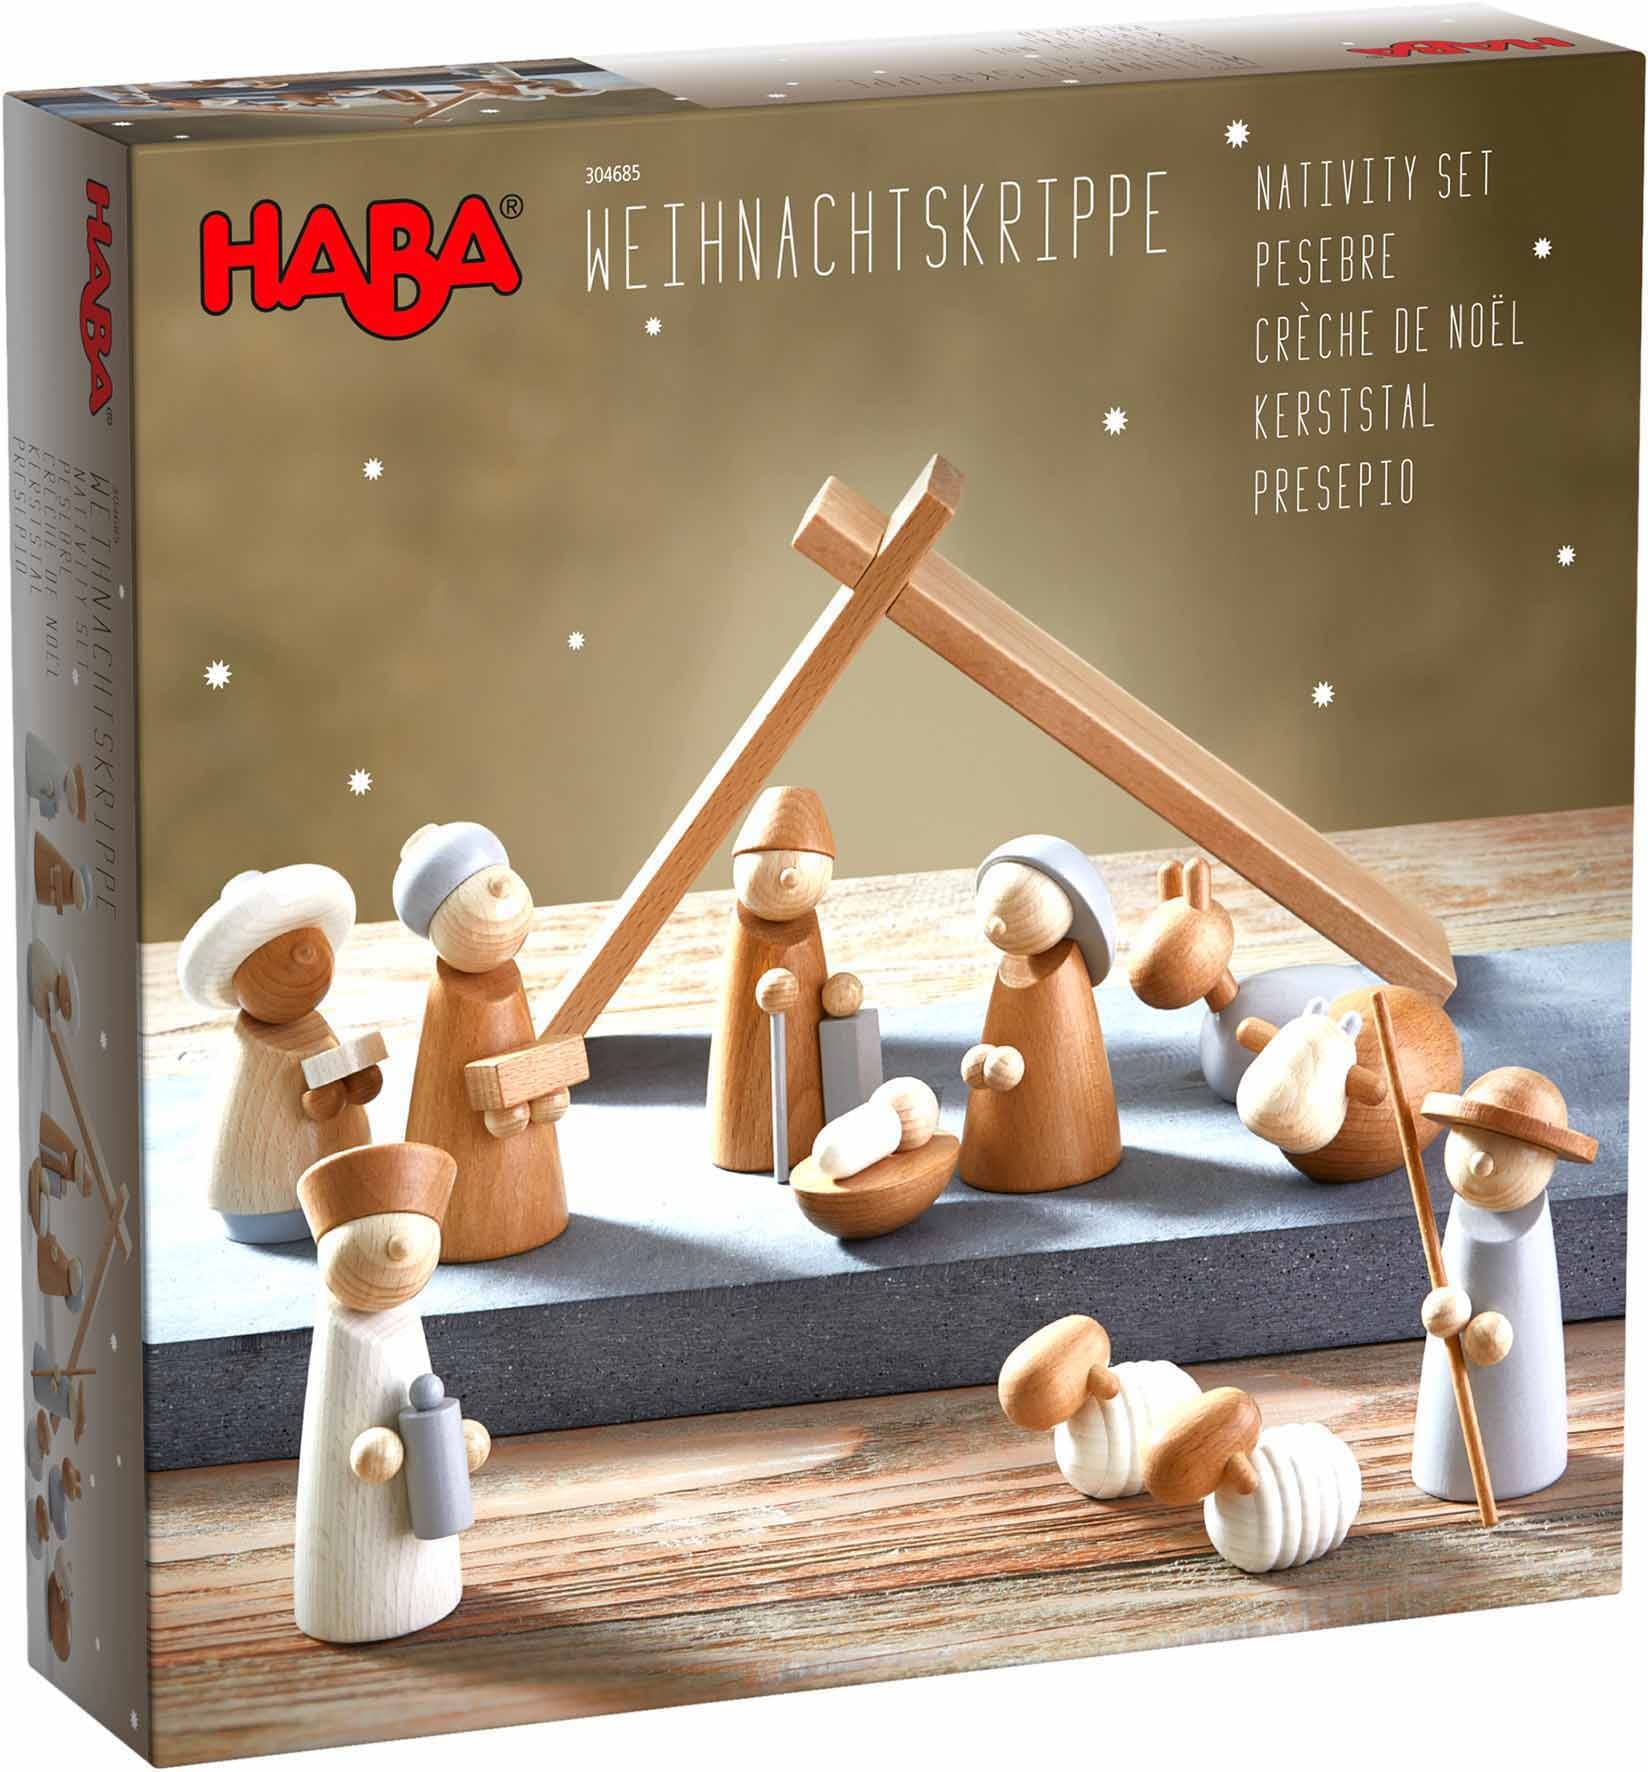 Spielfigur Germany kaufen »Holzspielzeug, OTTO Made online | Weihnachtskrippe«, ; in Haba